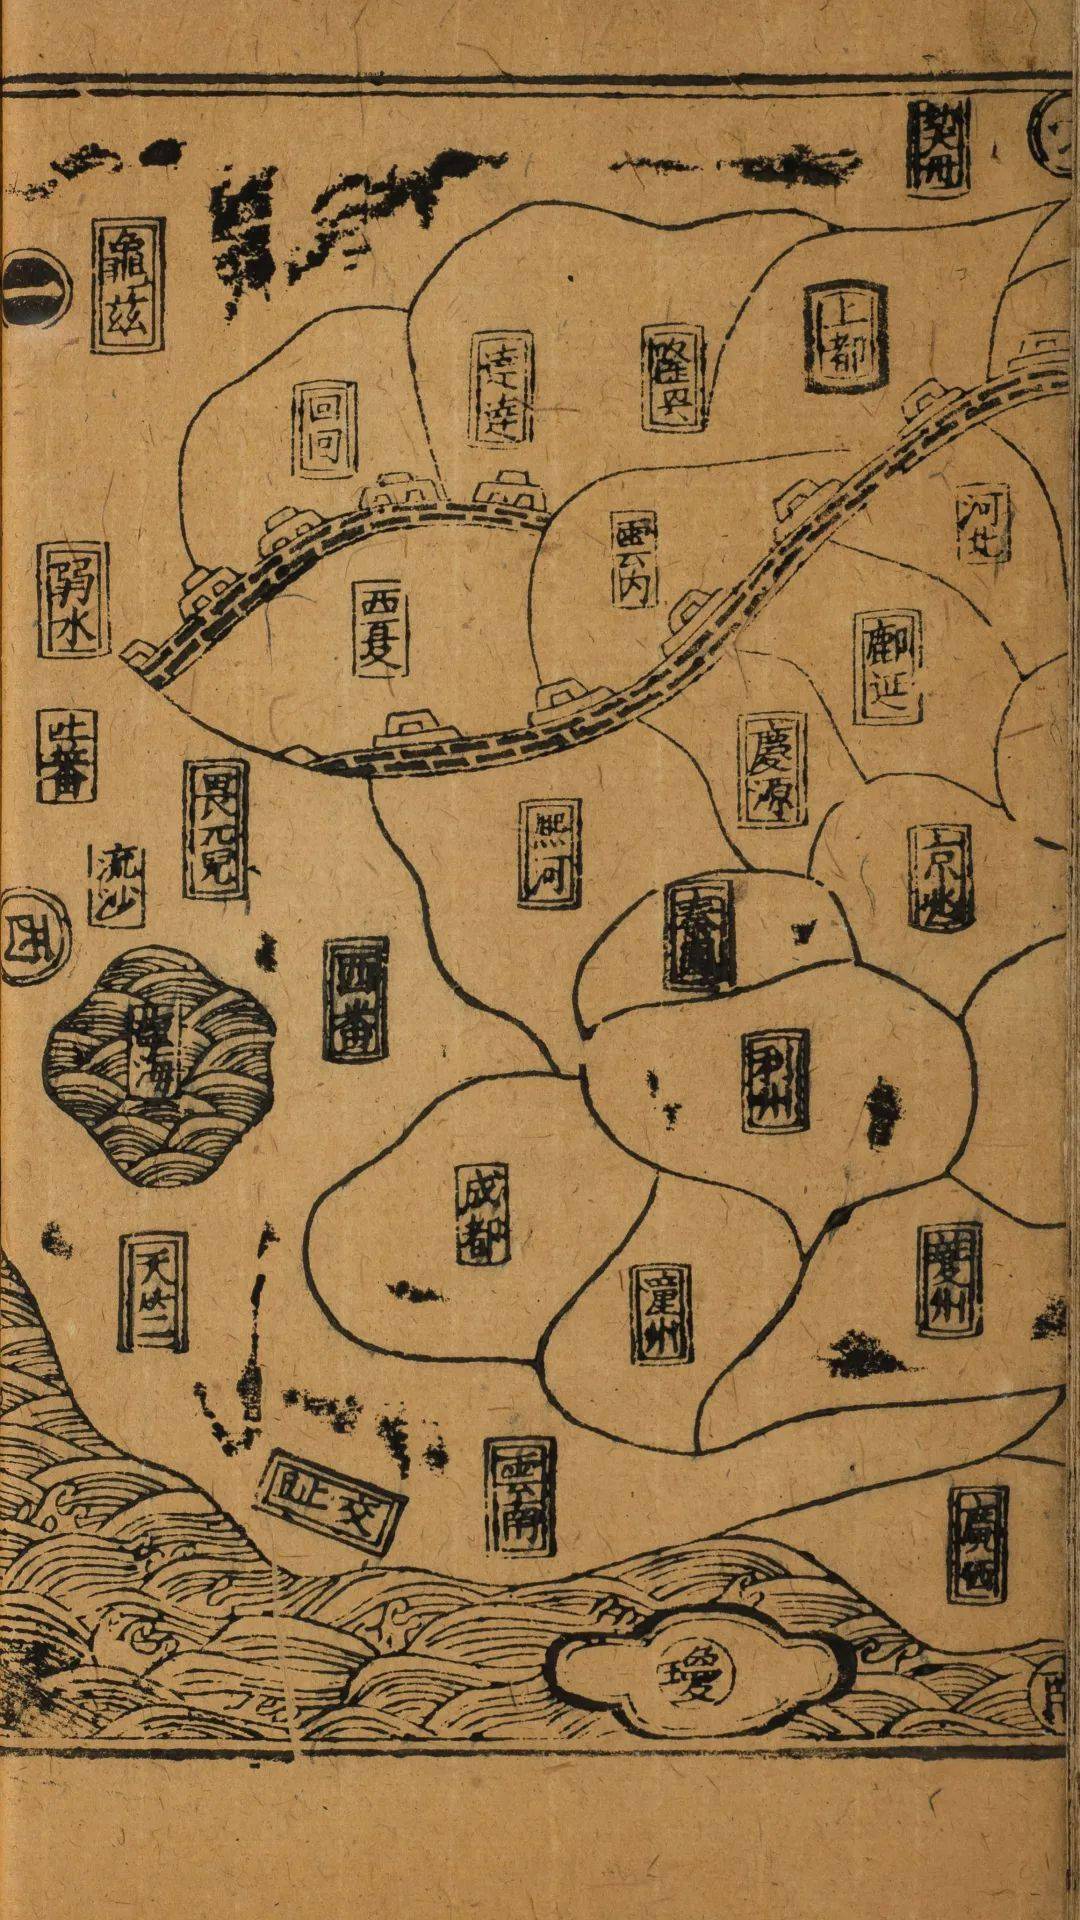 传承之道 | 在没有卫星的古代,中国人是如何绘制地图的?